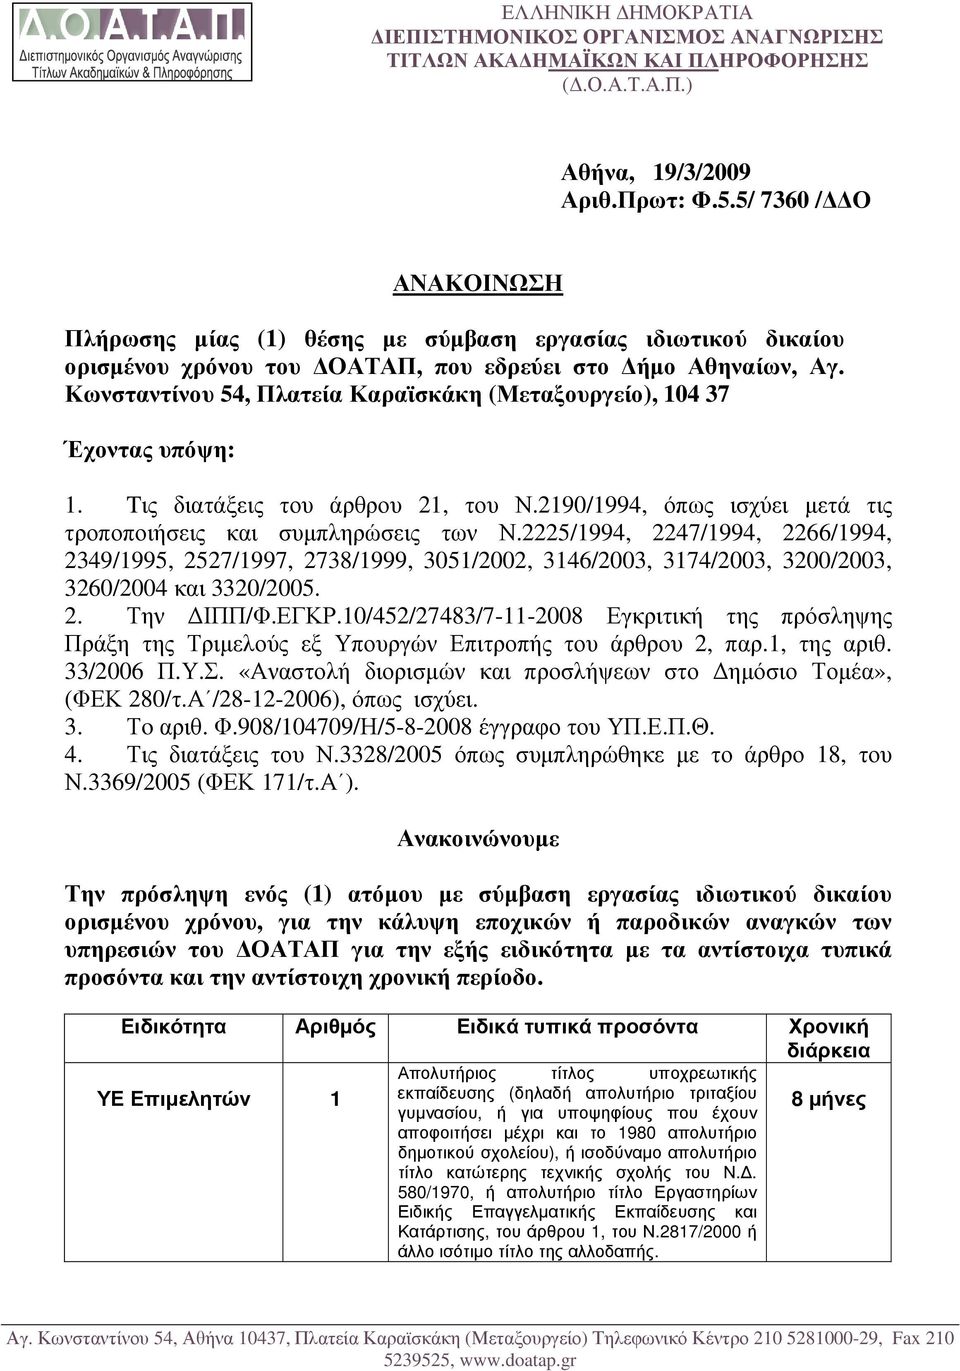 Κωνσταντίνου 54, Πλατεία Καραϊσκάκη (Μεταξουργείο), 104 37 Έχοντας υπόψη: 1. Tις διατάξεις του άρθρου 21, του Ν.2190/1994, όπως ισχύει µετά τις τροποποιήσεις και συµπληρώσεις των Ν.